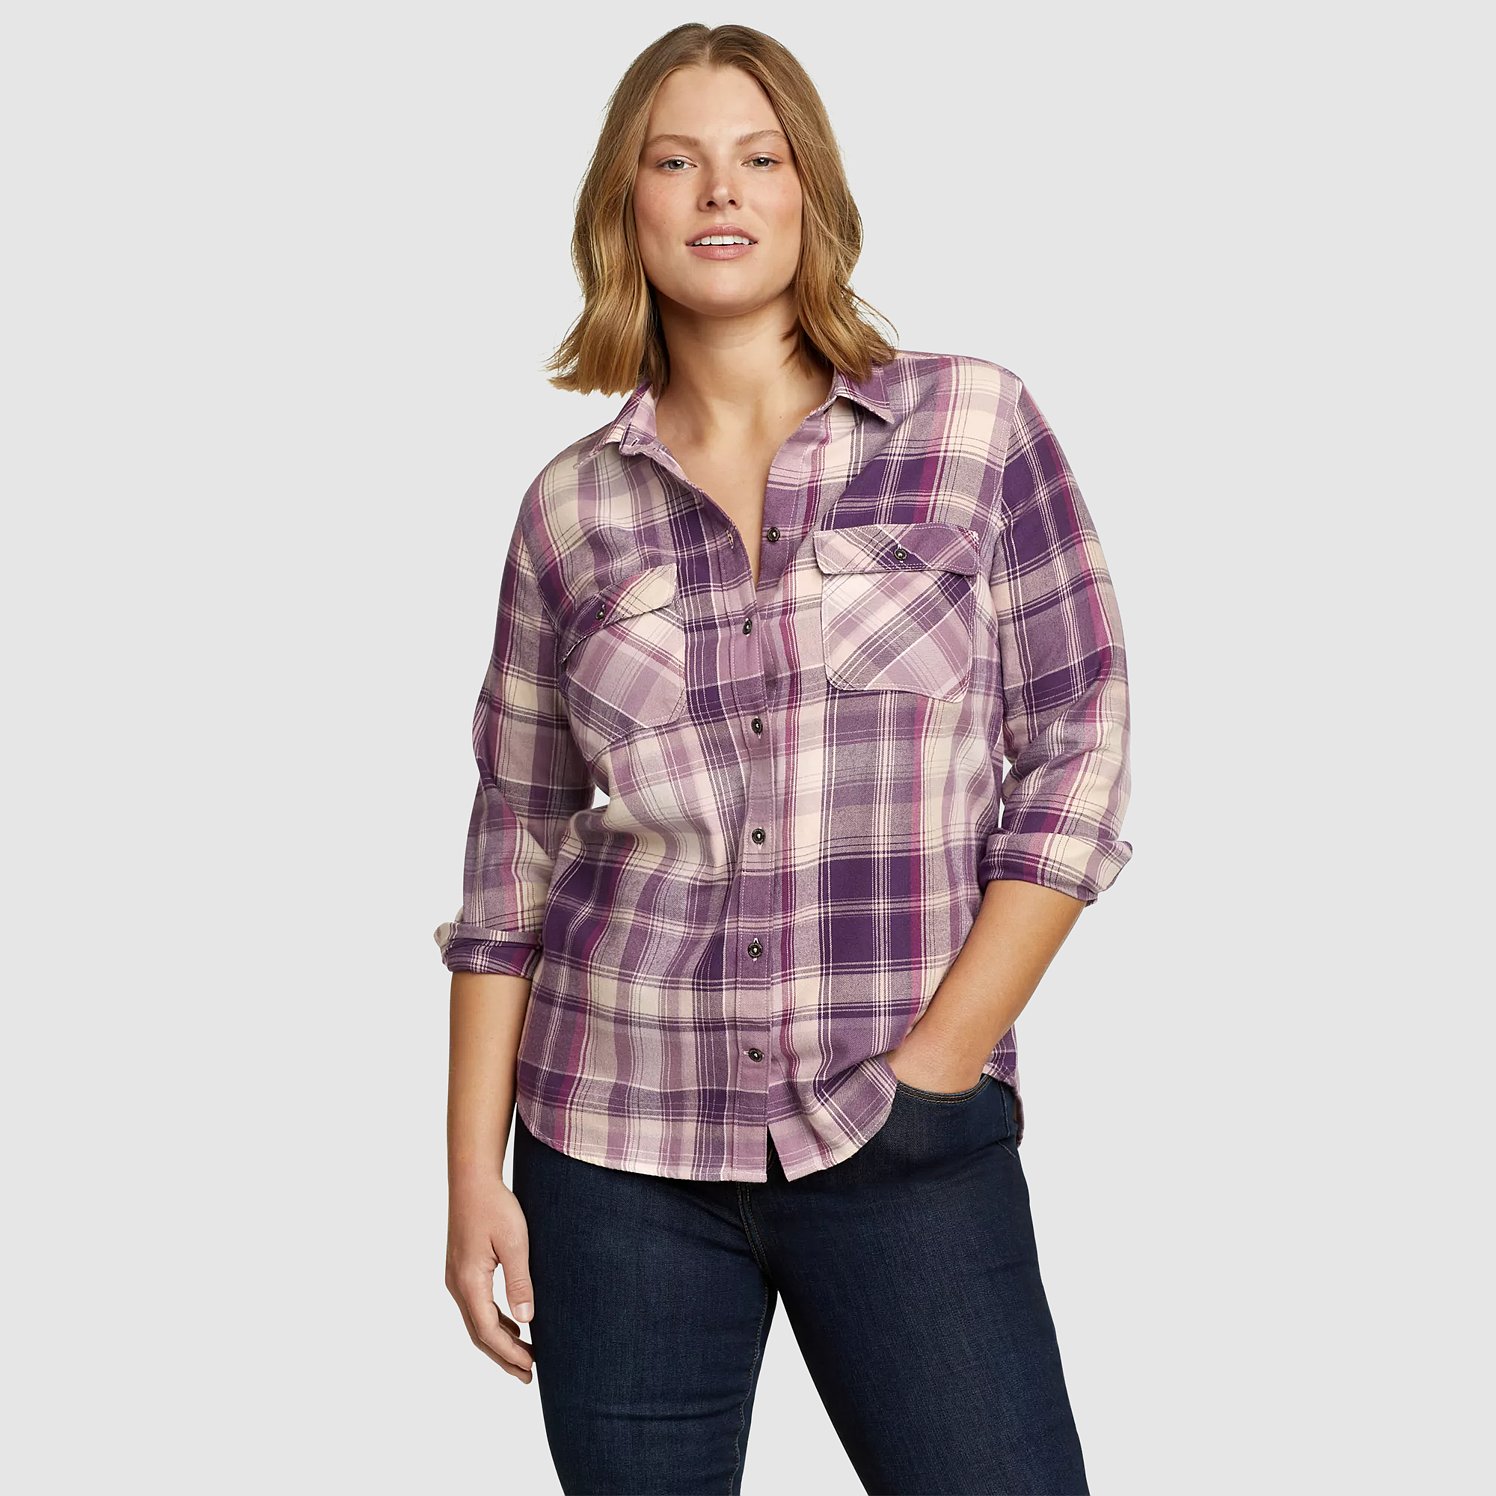 Eddie Bauer Women's Firelight Flannel Shirt - Hyacinth - Size M